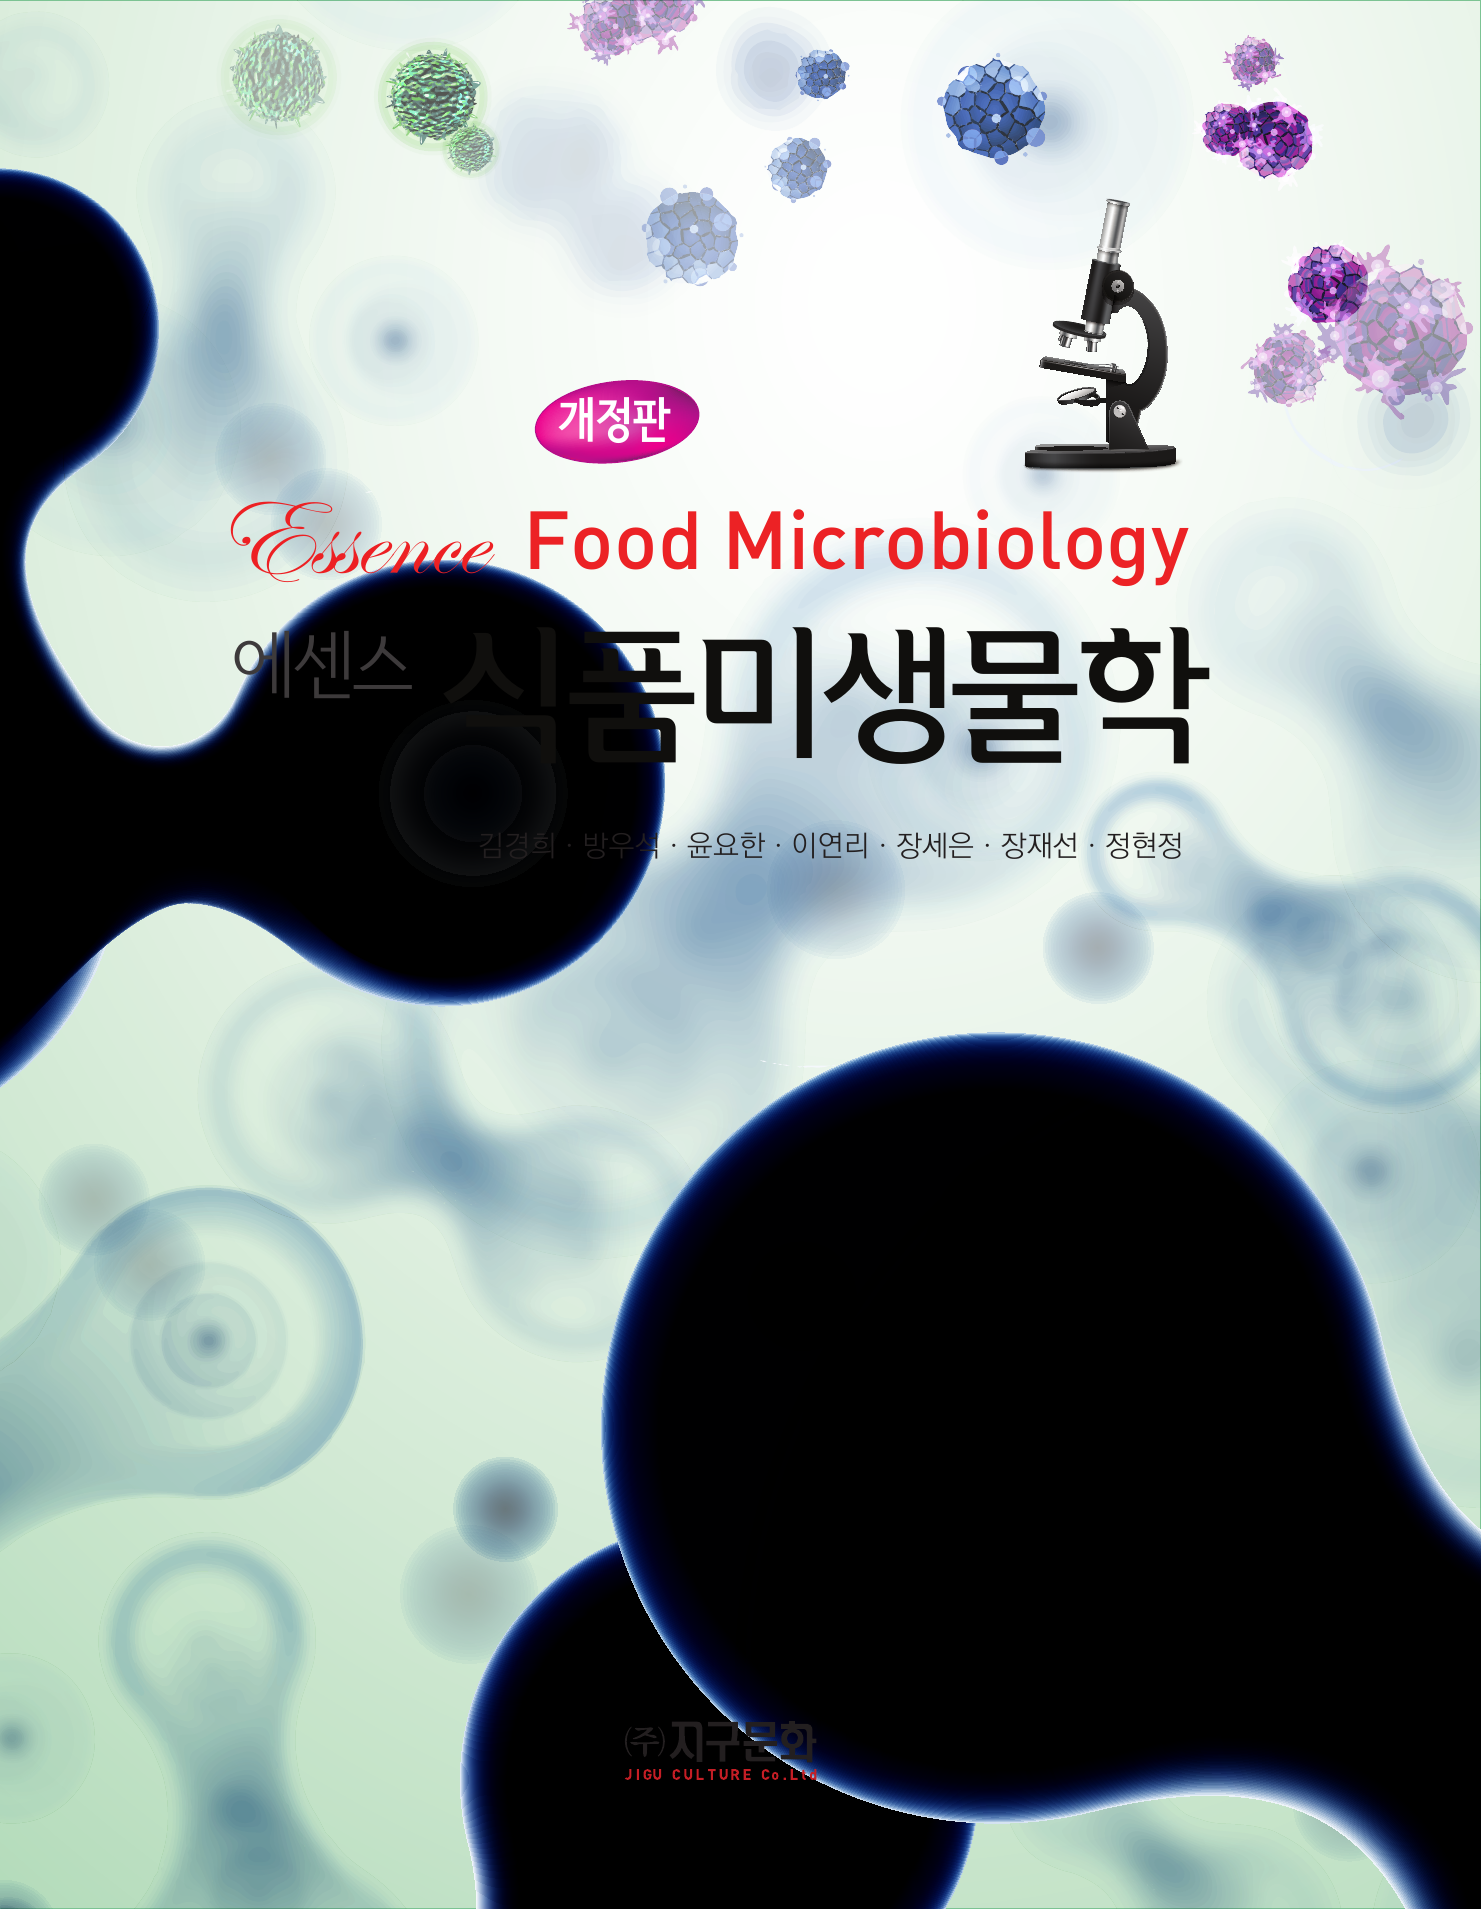 에센스 식품미생물학